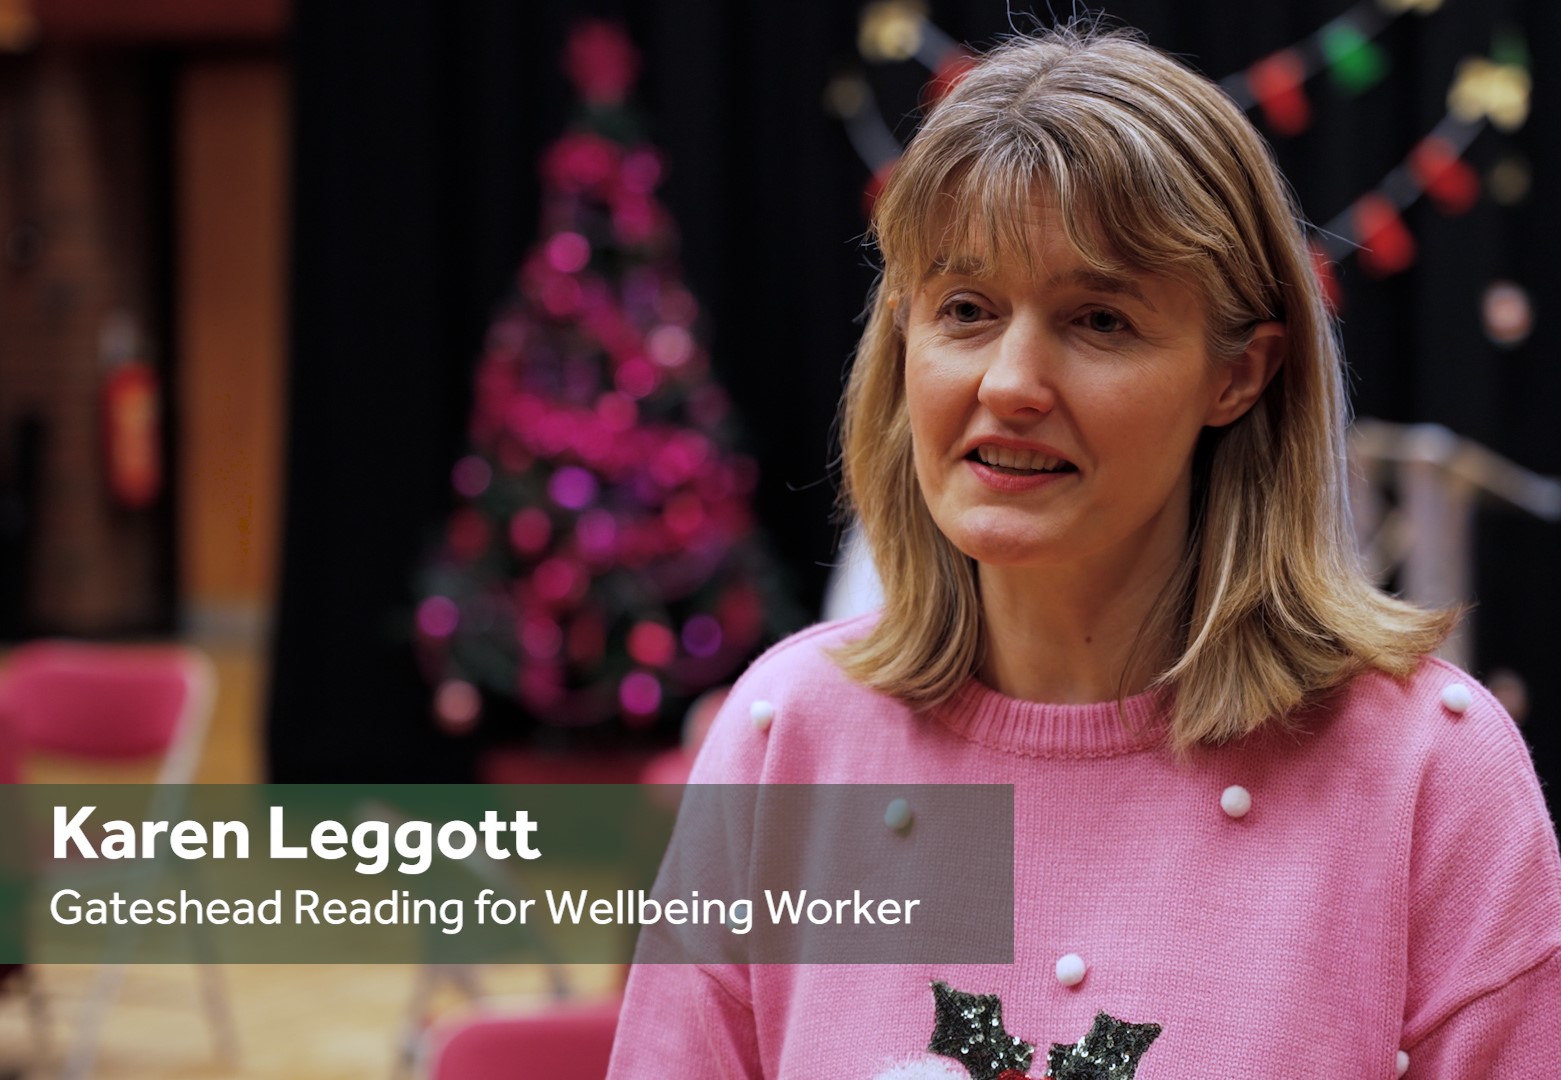 Karen Leggott, Gateshead Reading for Wellbeing Worker